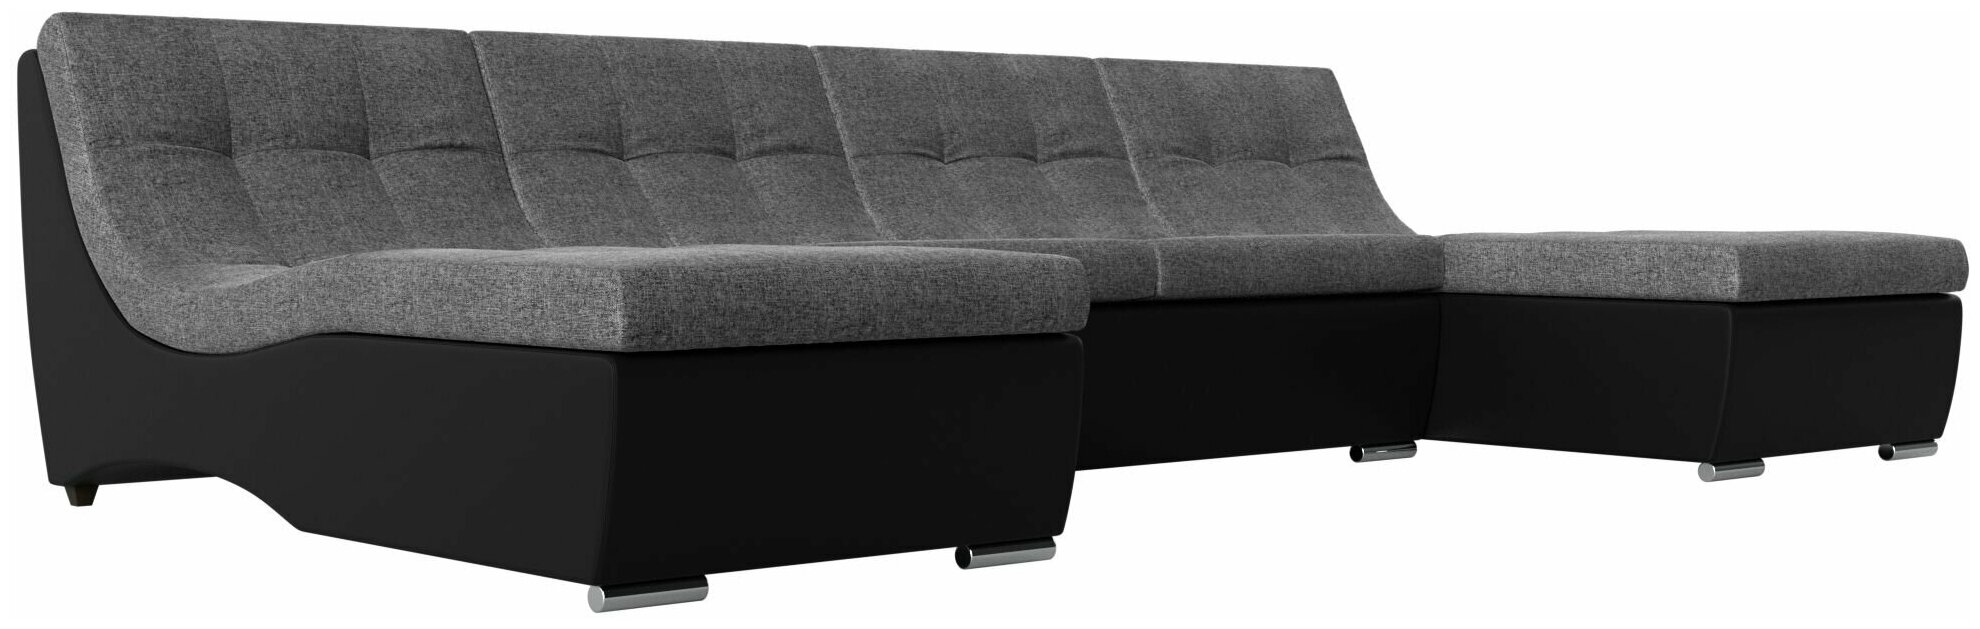 П-образный модульный диван Монреаль, Рогожка серая и Экокожа черная